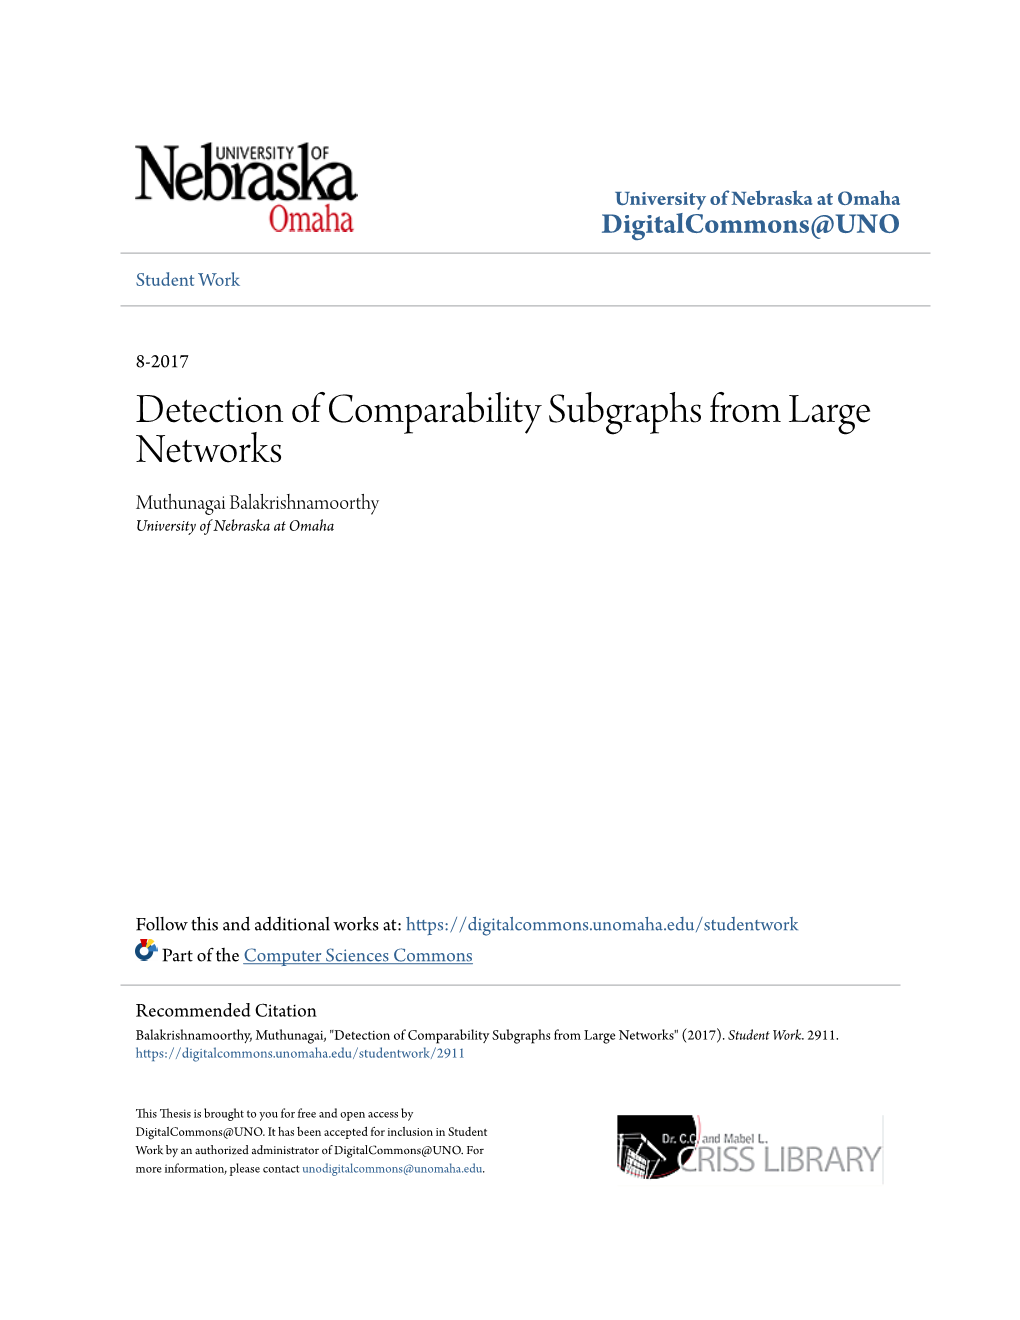 Detection of Comparability Subgraphs from Large Networks Muthunagai Balakrishnamoorthy University of Nebraska at Omaha